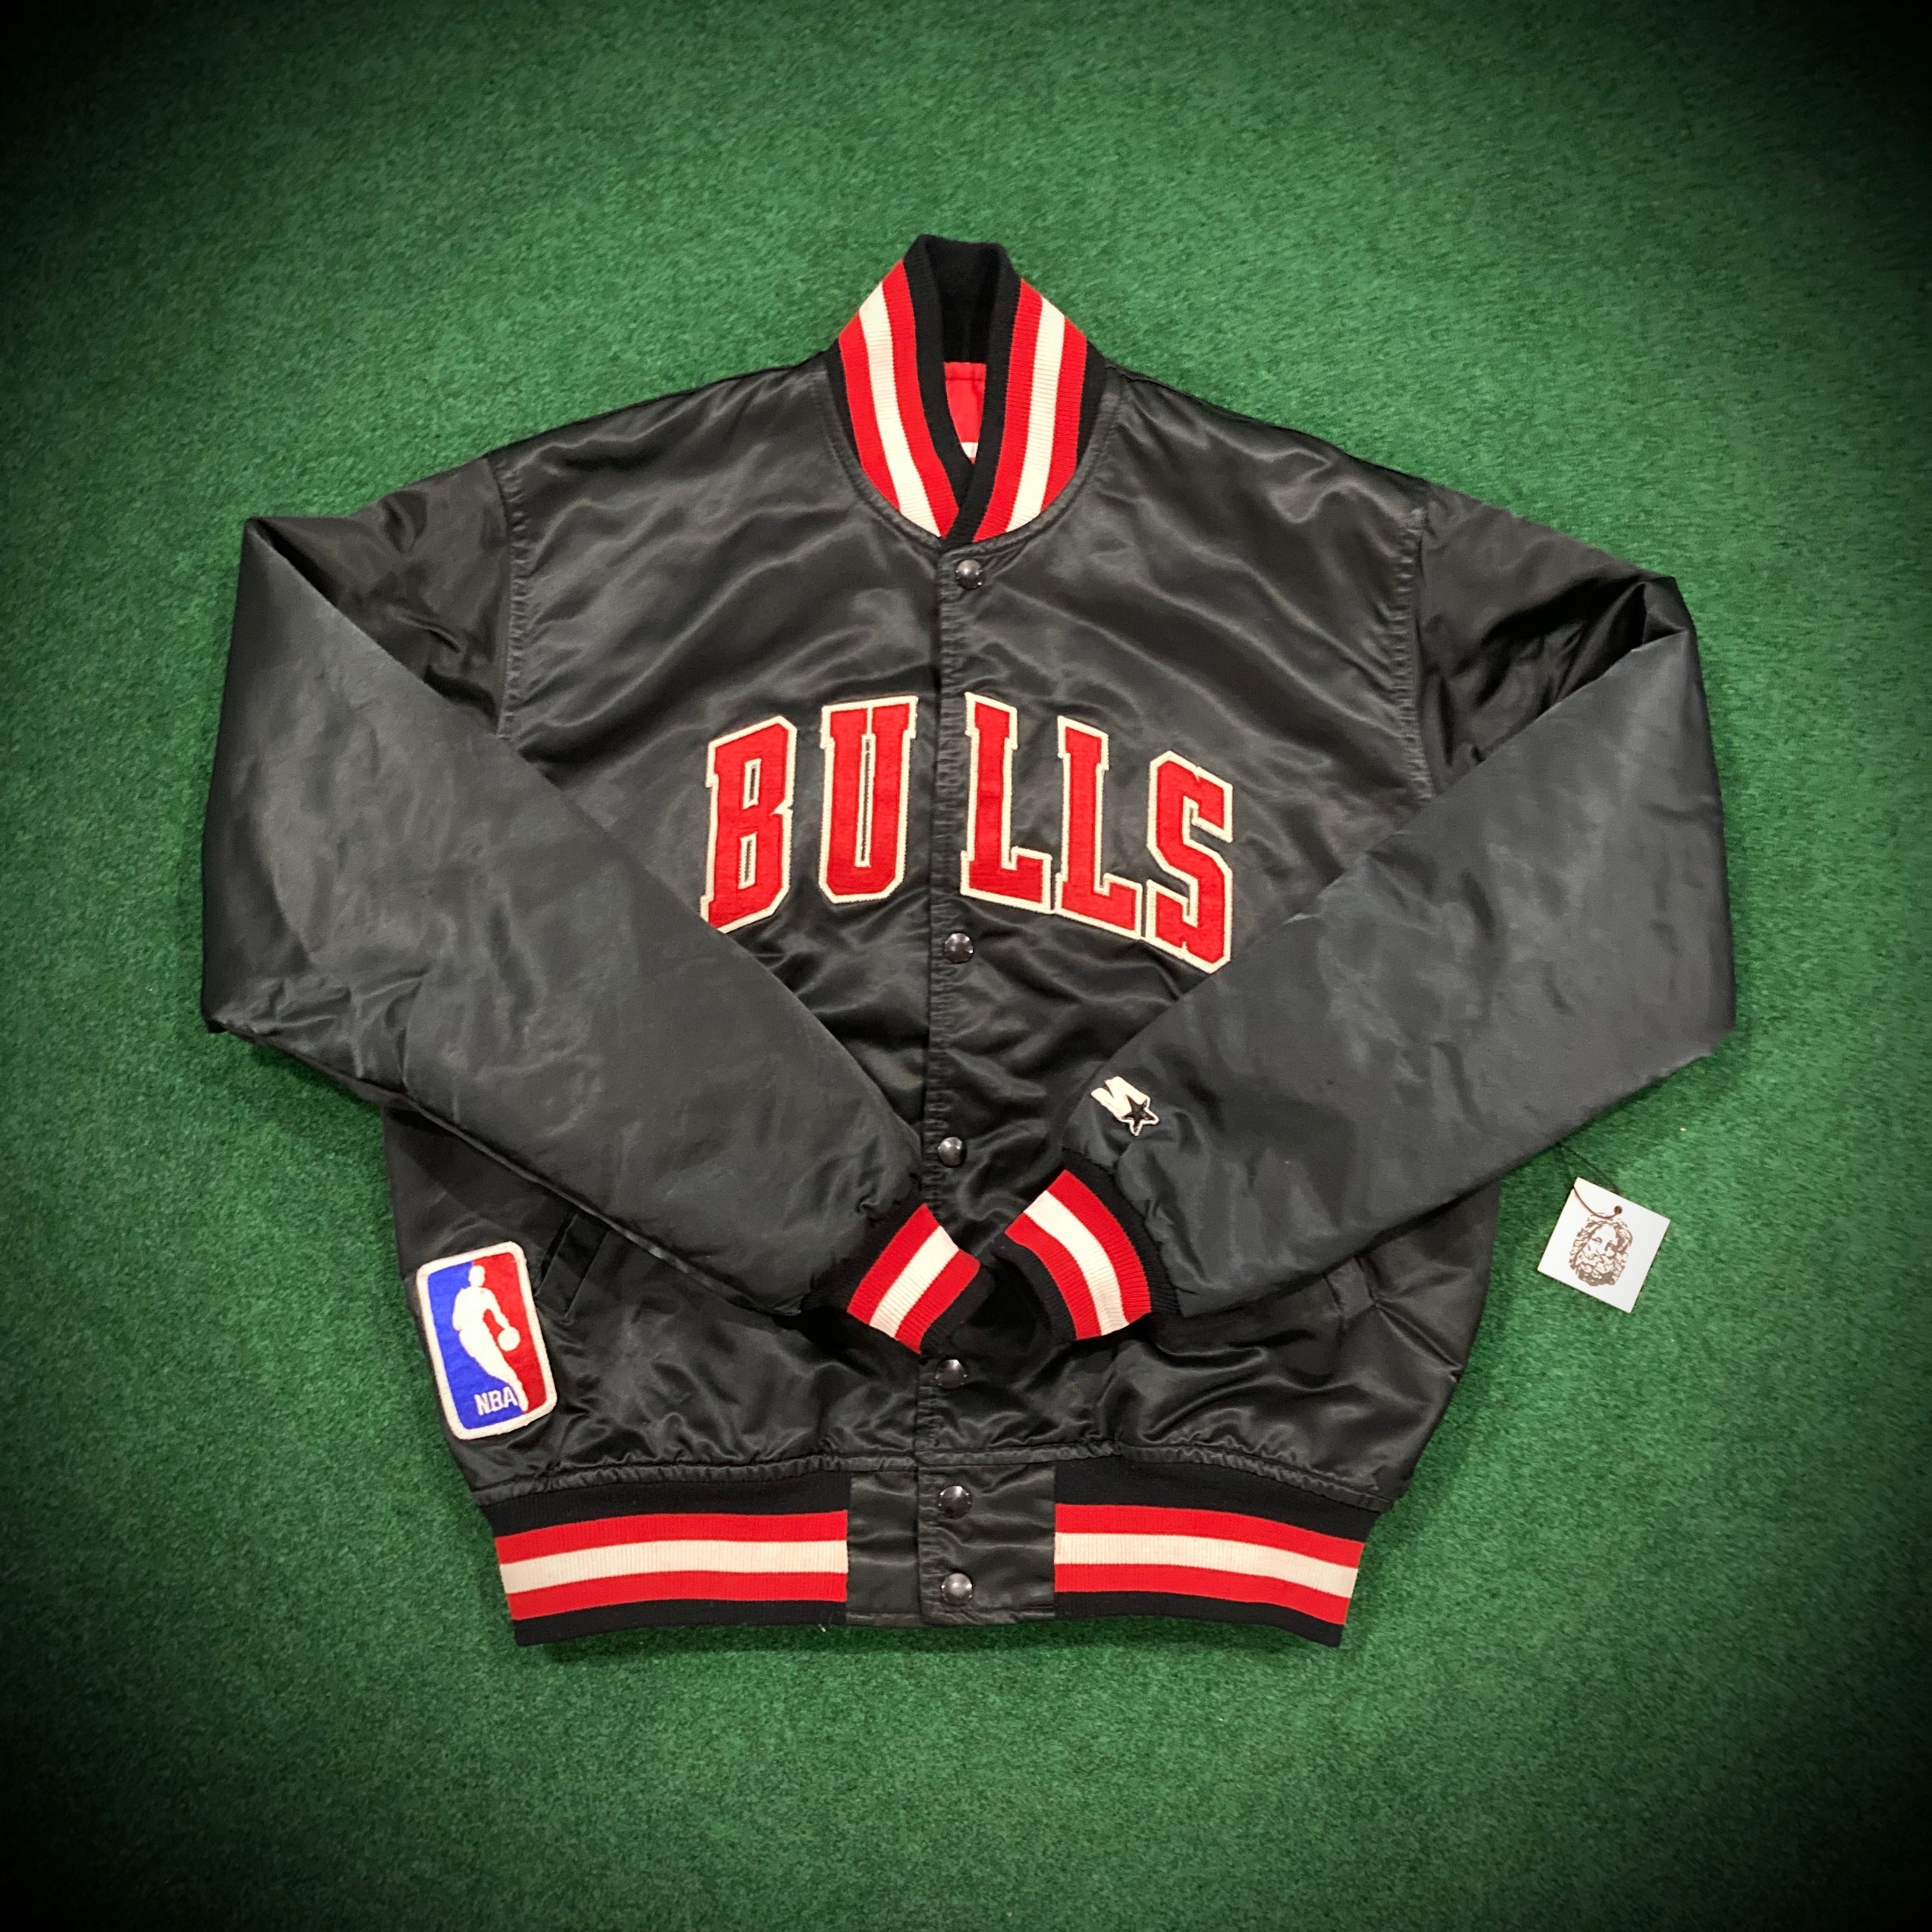 Starter Chicago Bulls Black Satin Bomber Jacket